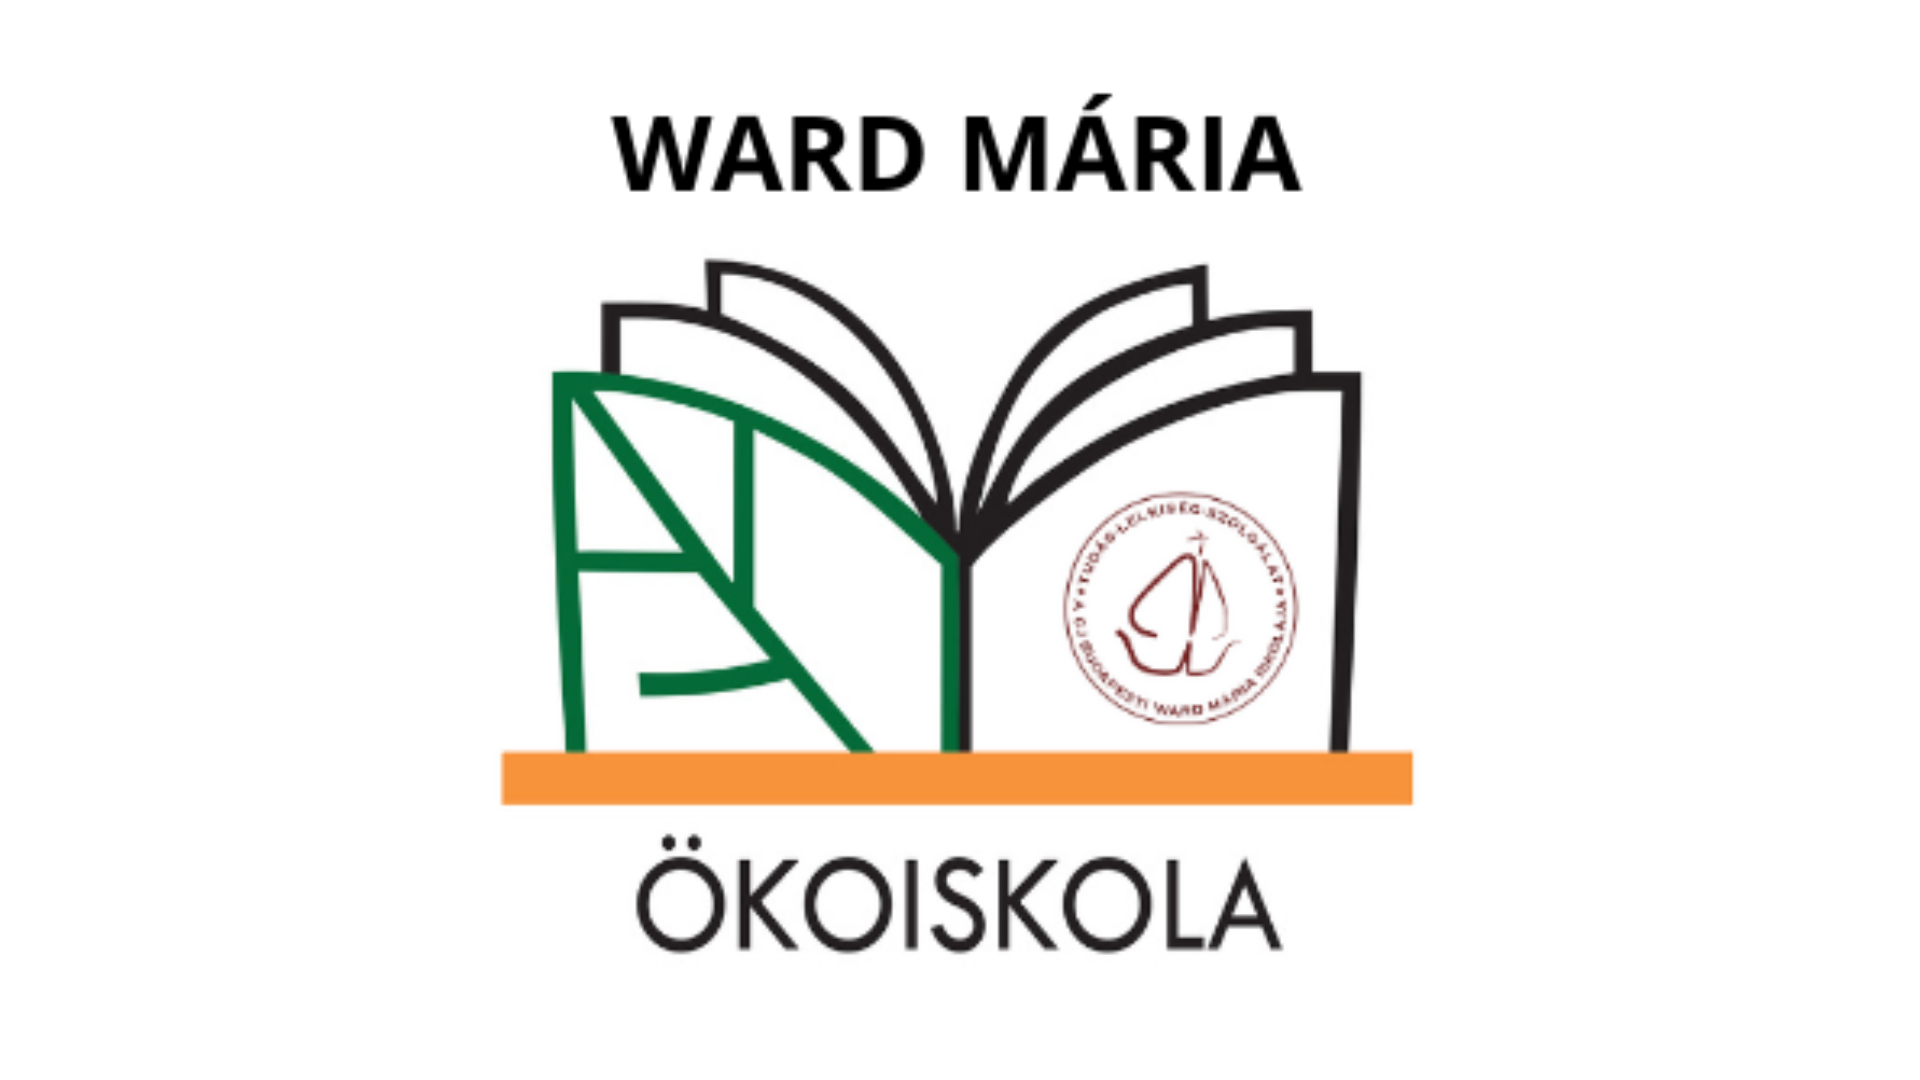 Budapesti Ward Mária Ökoiskola 